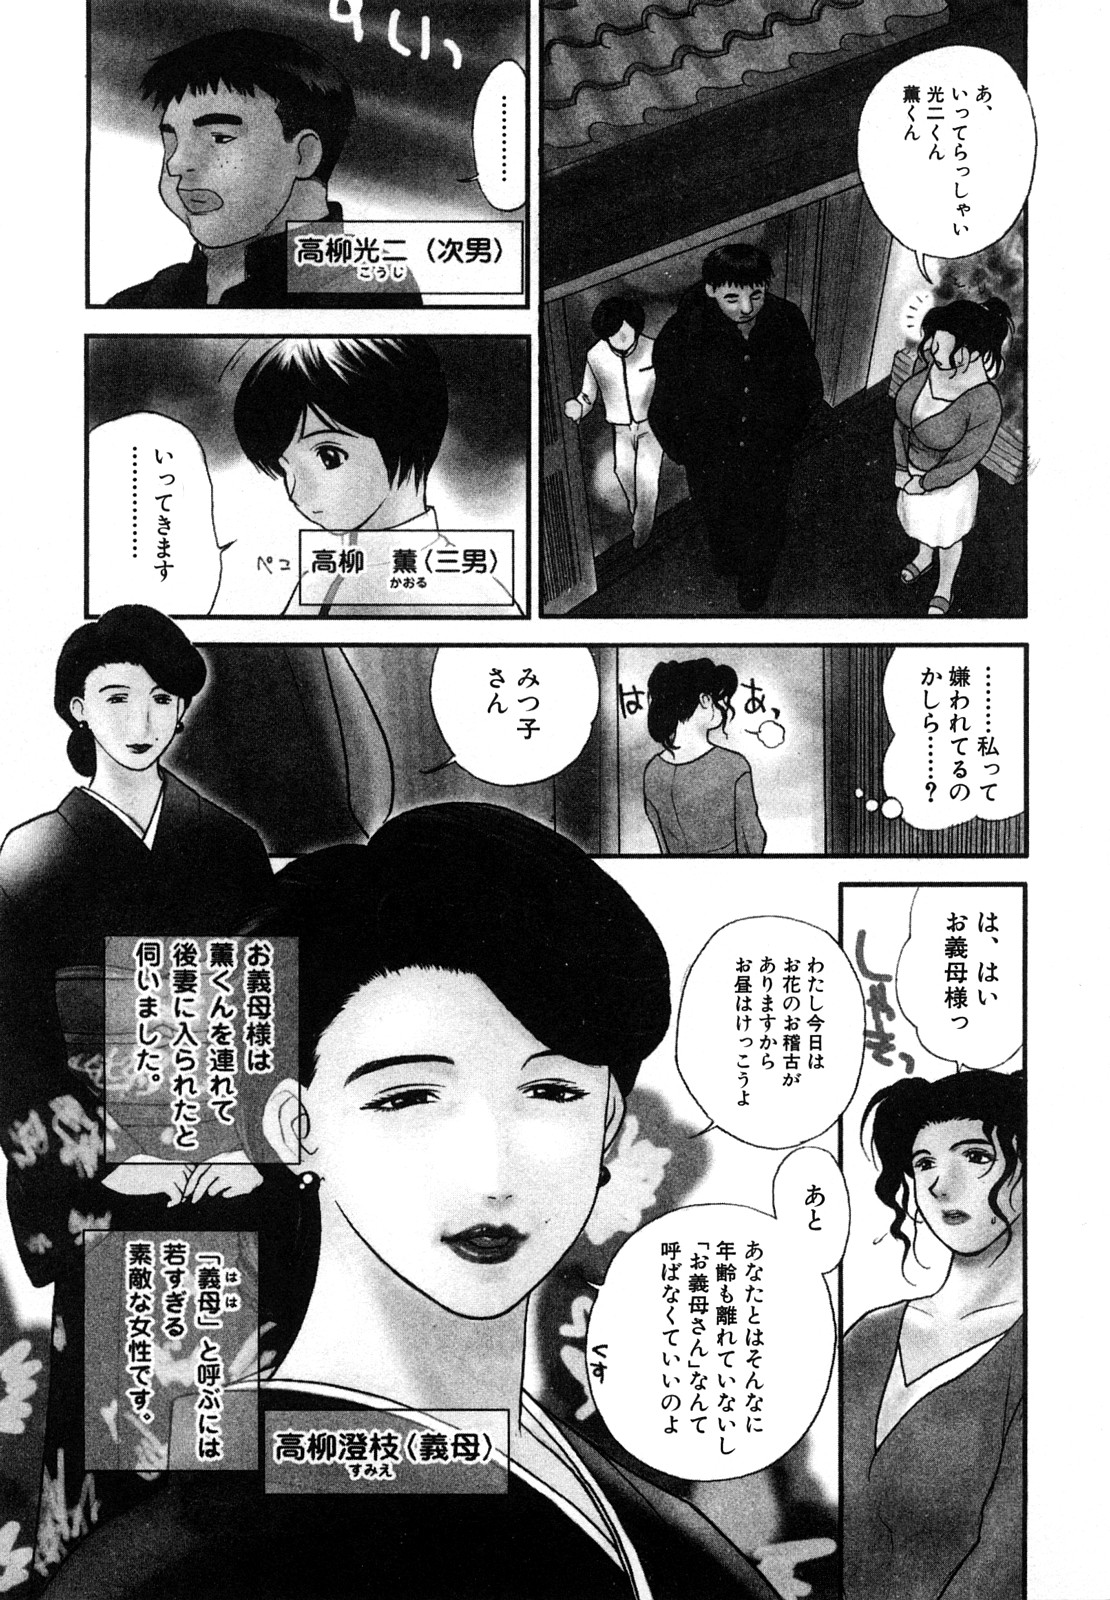 [Miyabi Tsuzuru] Niku Yome ~Konoie-ke no Hitobito~ Shinsouban [みやびつづる] 肉嫁 ~高柳家の人々~ 新装版 [11-01-10]